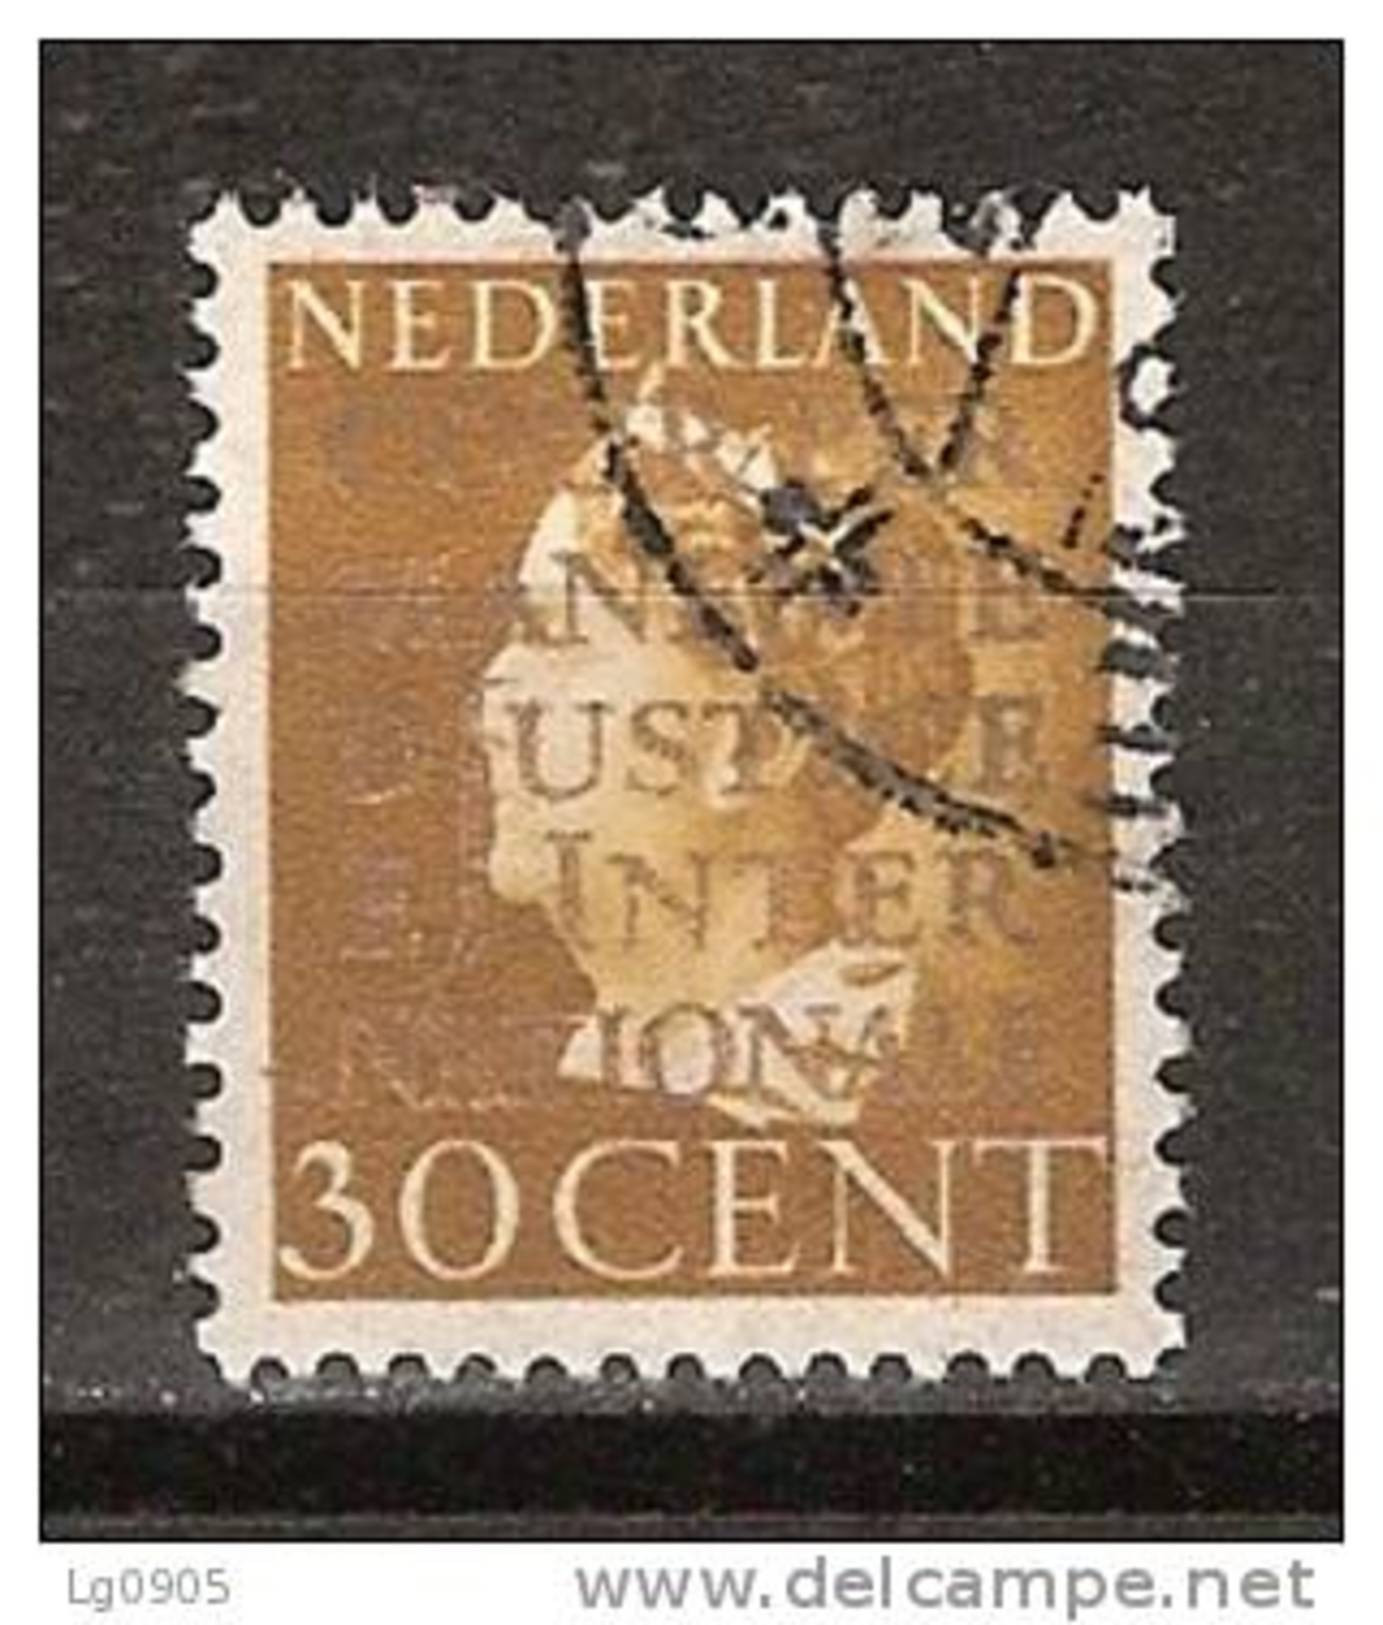 Nederland Netherlands Pays Bas Niederlande Holanda 19 Used Dienstzegel, Service Stamp, Timbre Cour, Sello Oficio - Dienstmarken